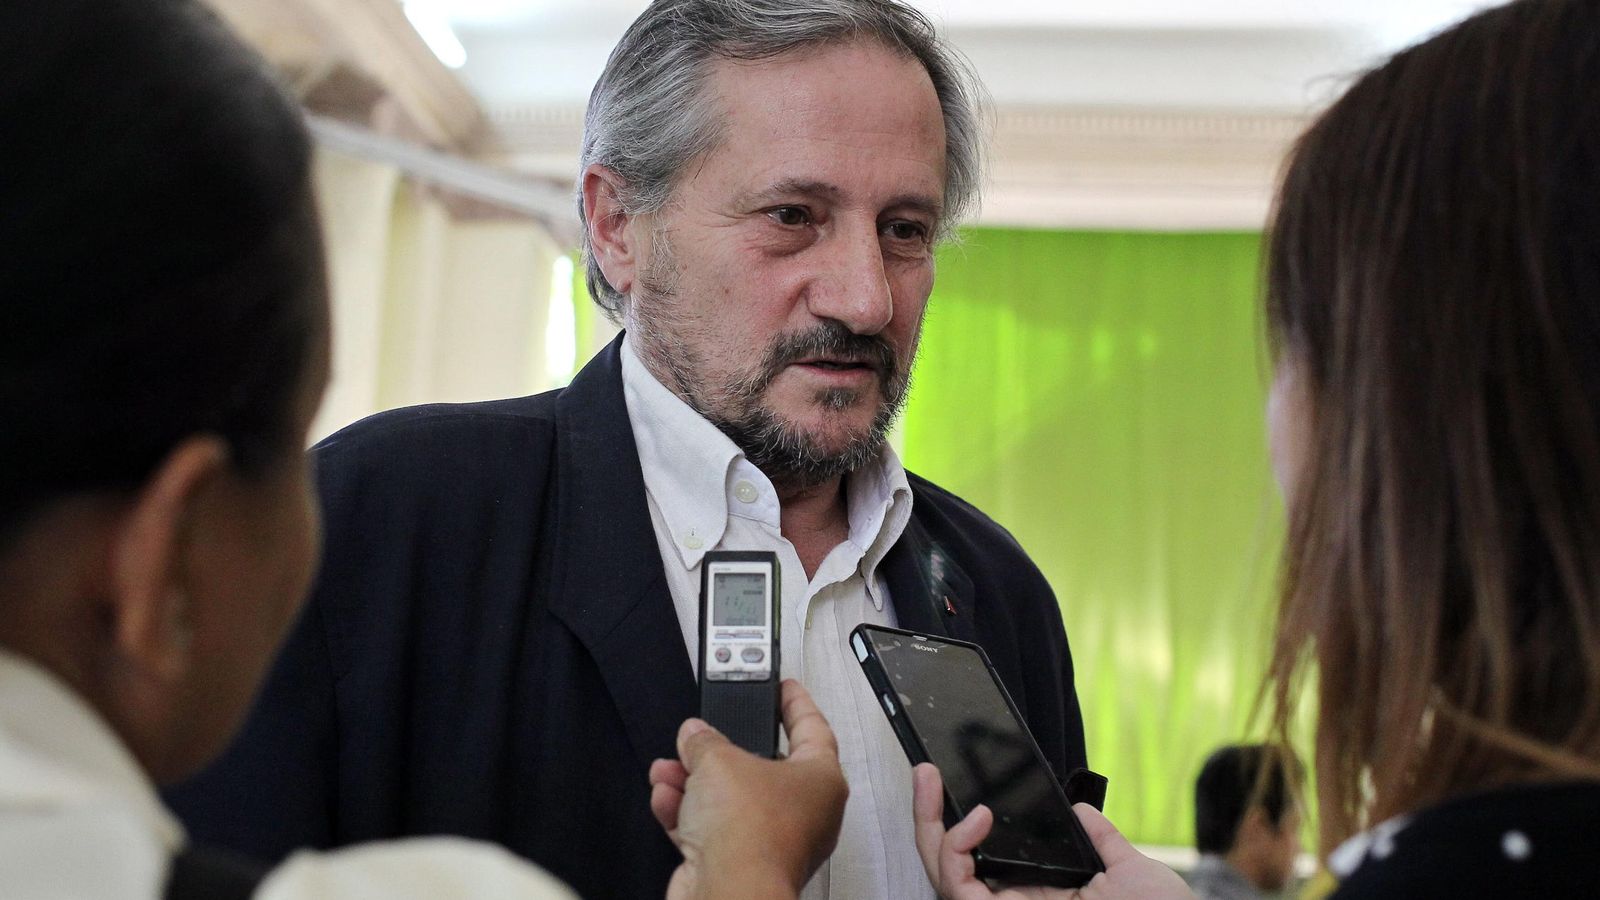 Foto: El exeurodiputado de Izquierda Unida Willy Meyer, tras ser condecorado en La Habana, Cuba, el pasado 29 de enero. (EFEI